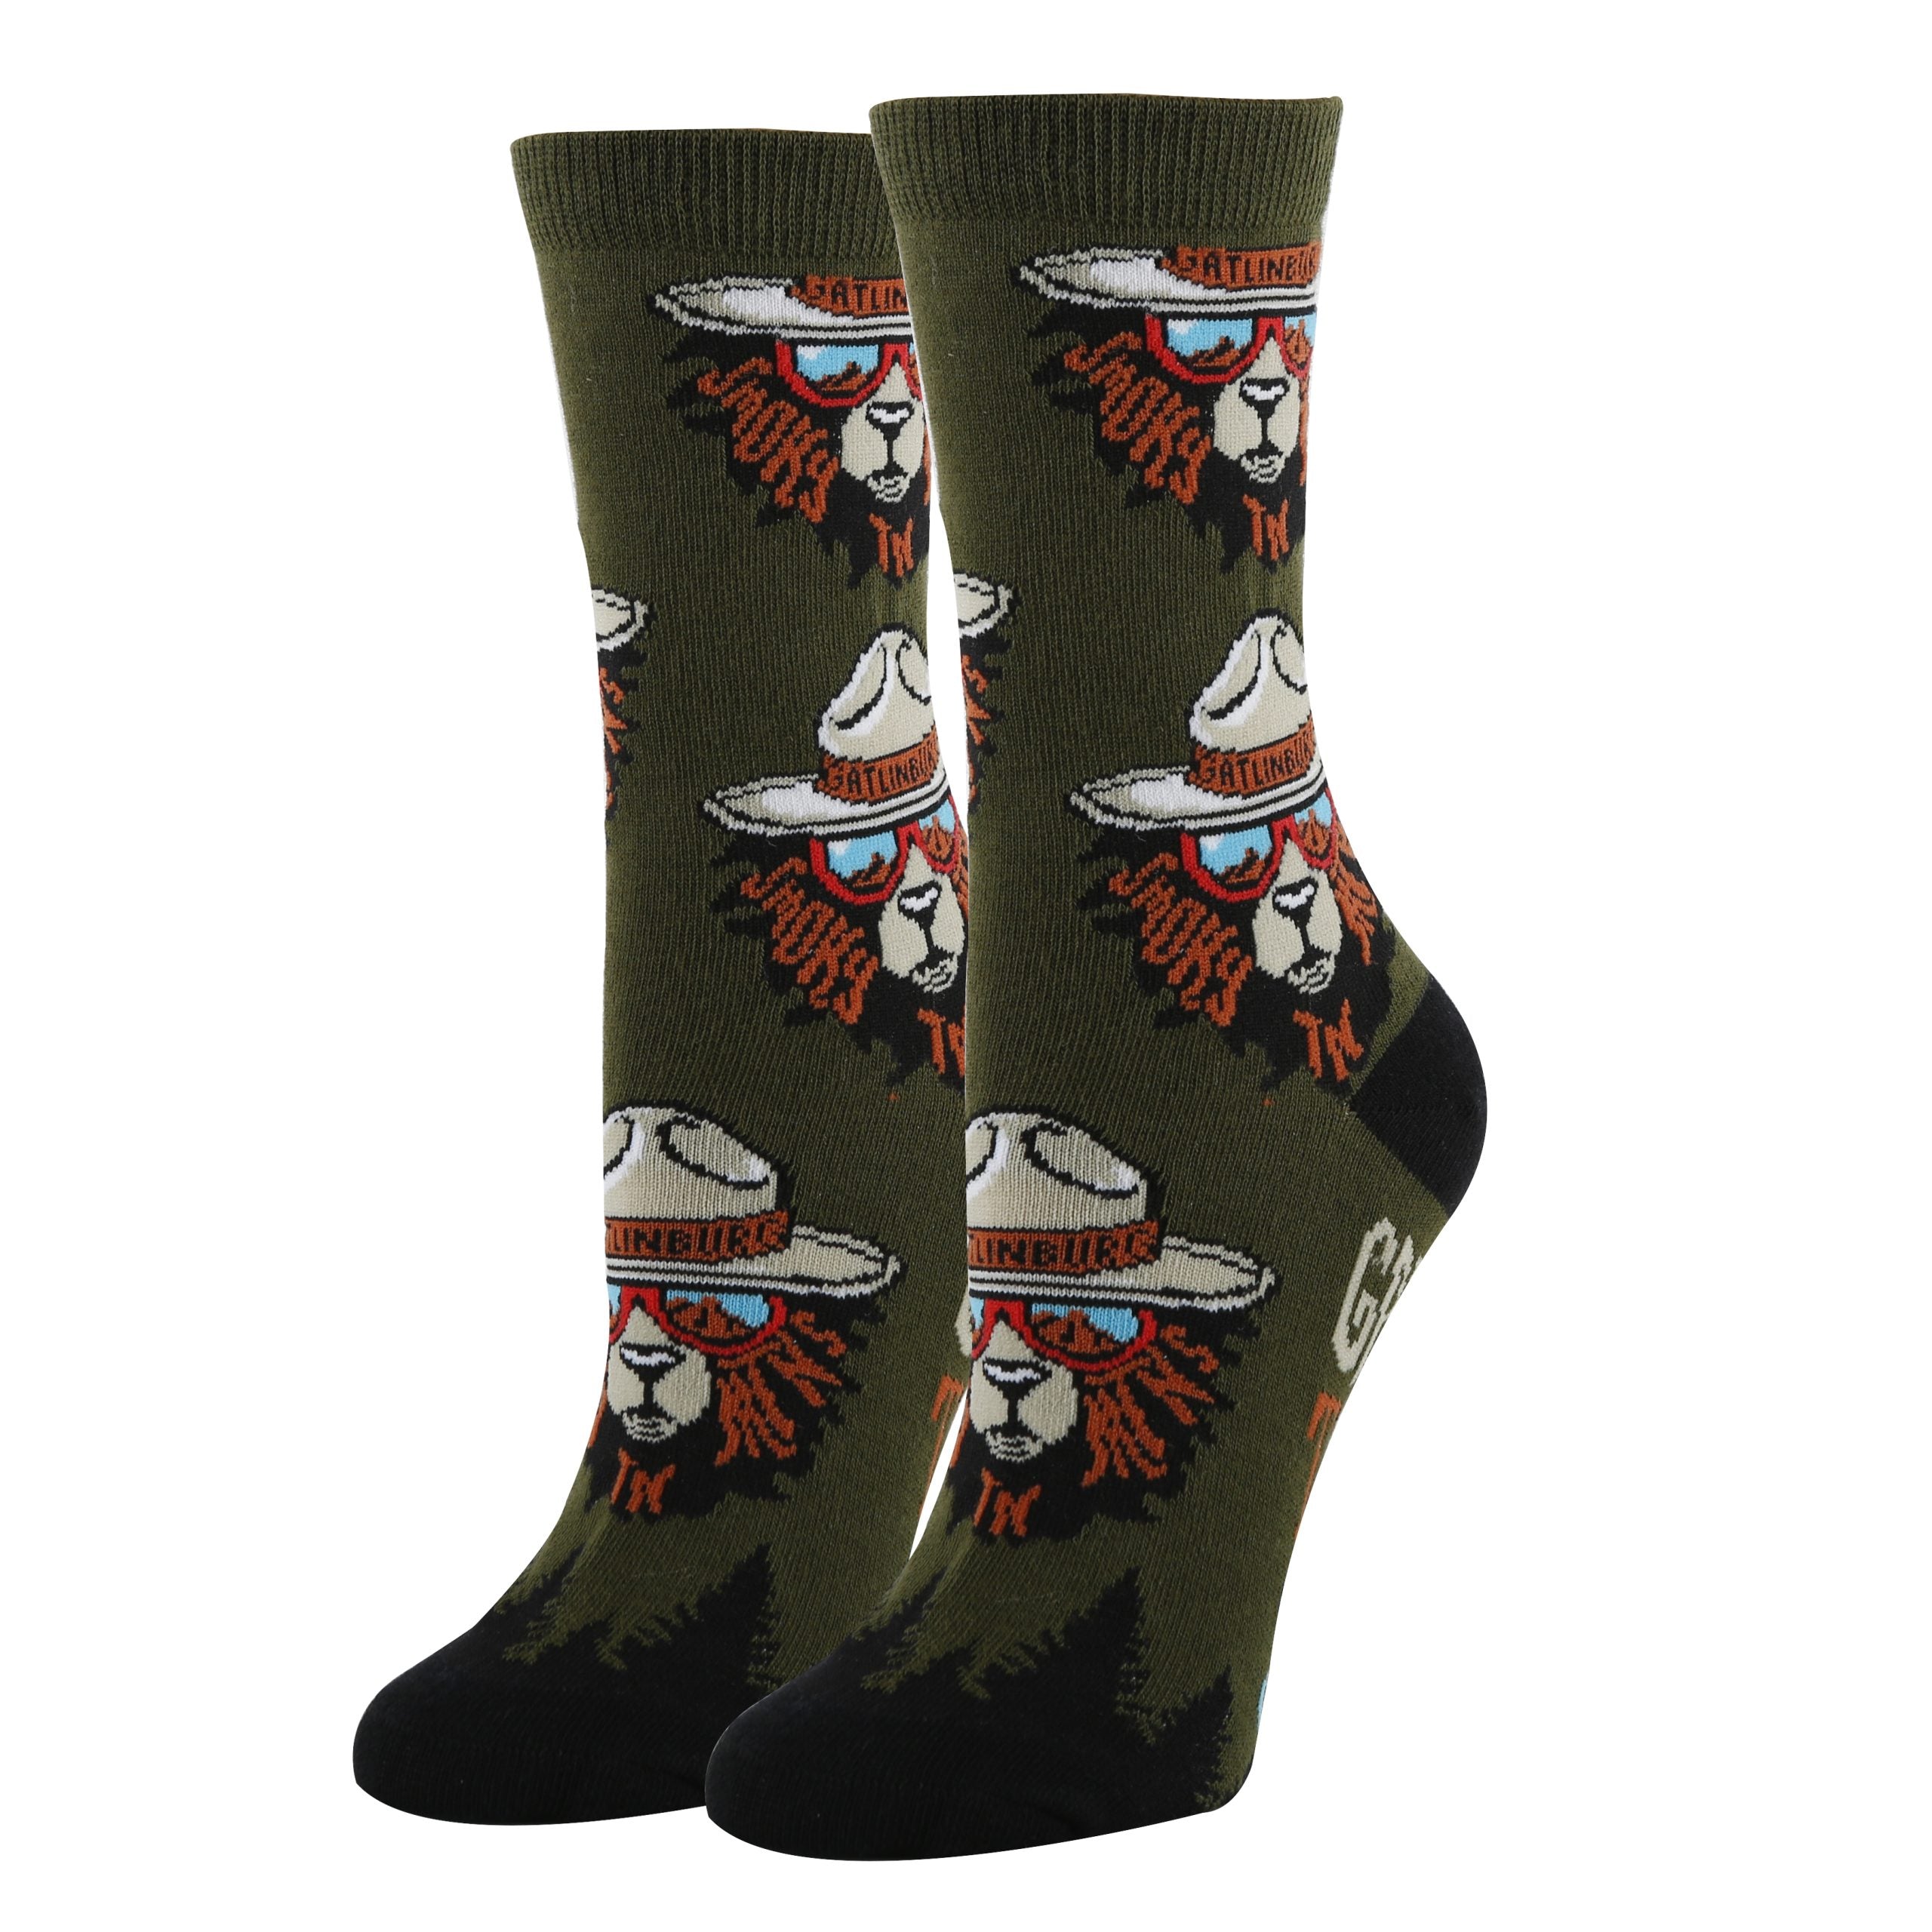 Gatlinburg Socks | Funny Crew Socks for Women